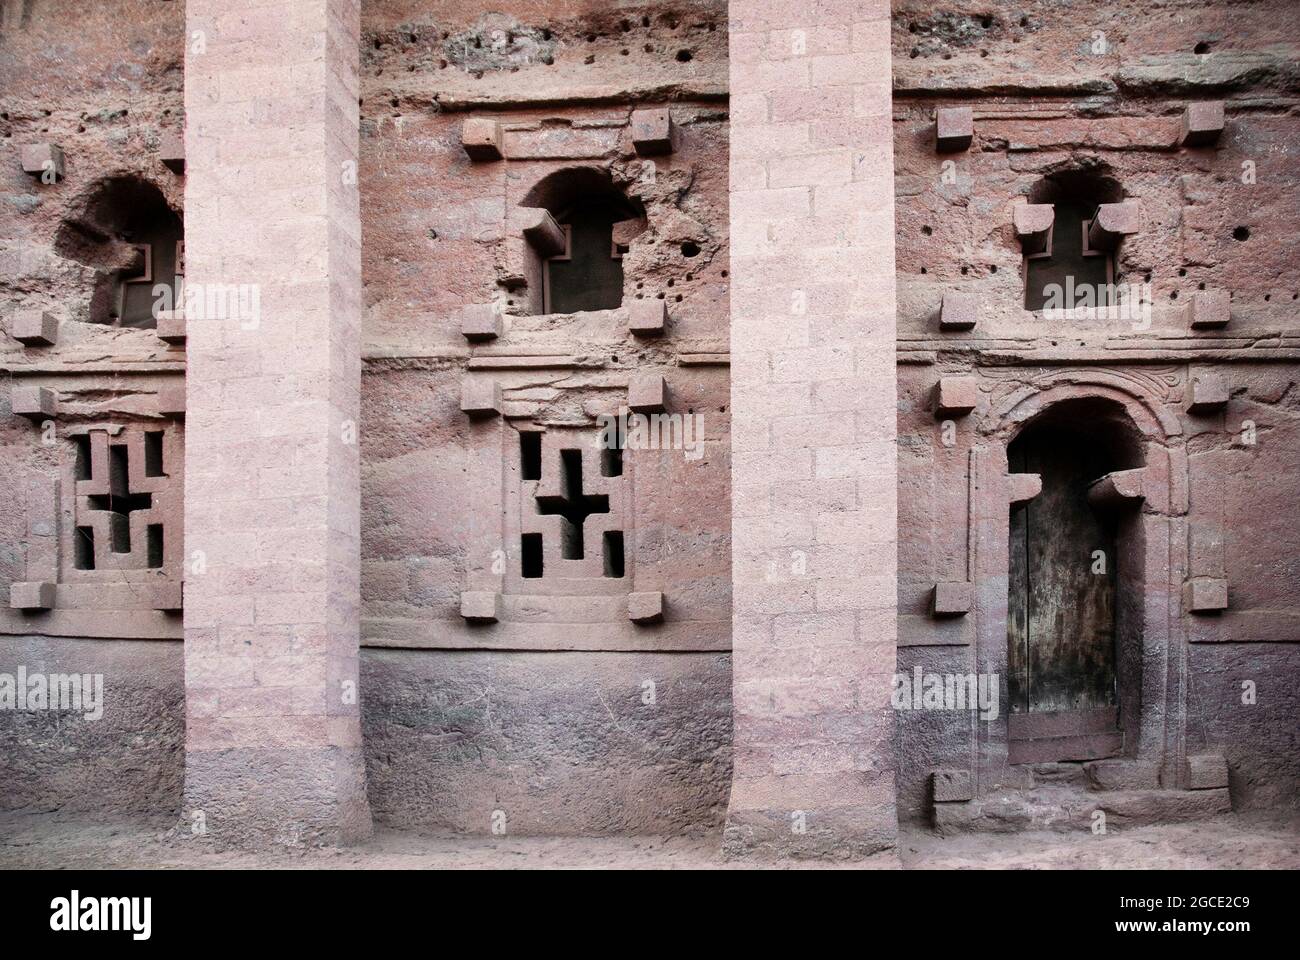 détail de lalibela anciennes églises monolithiques rock-hewn site historique en ethiopie Banque D'Images